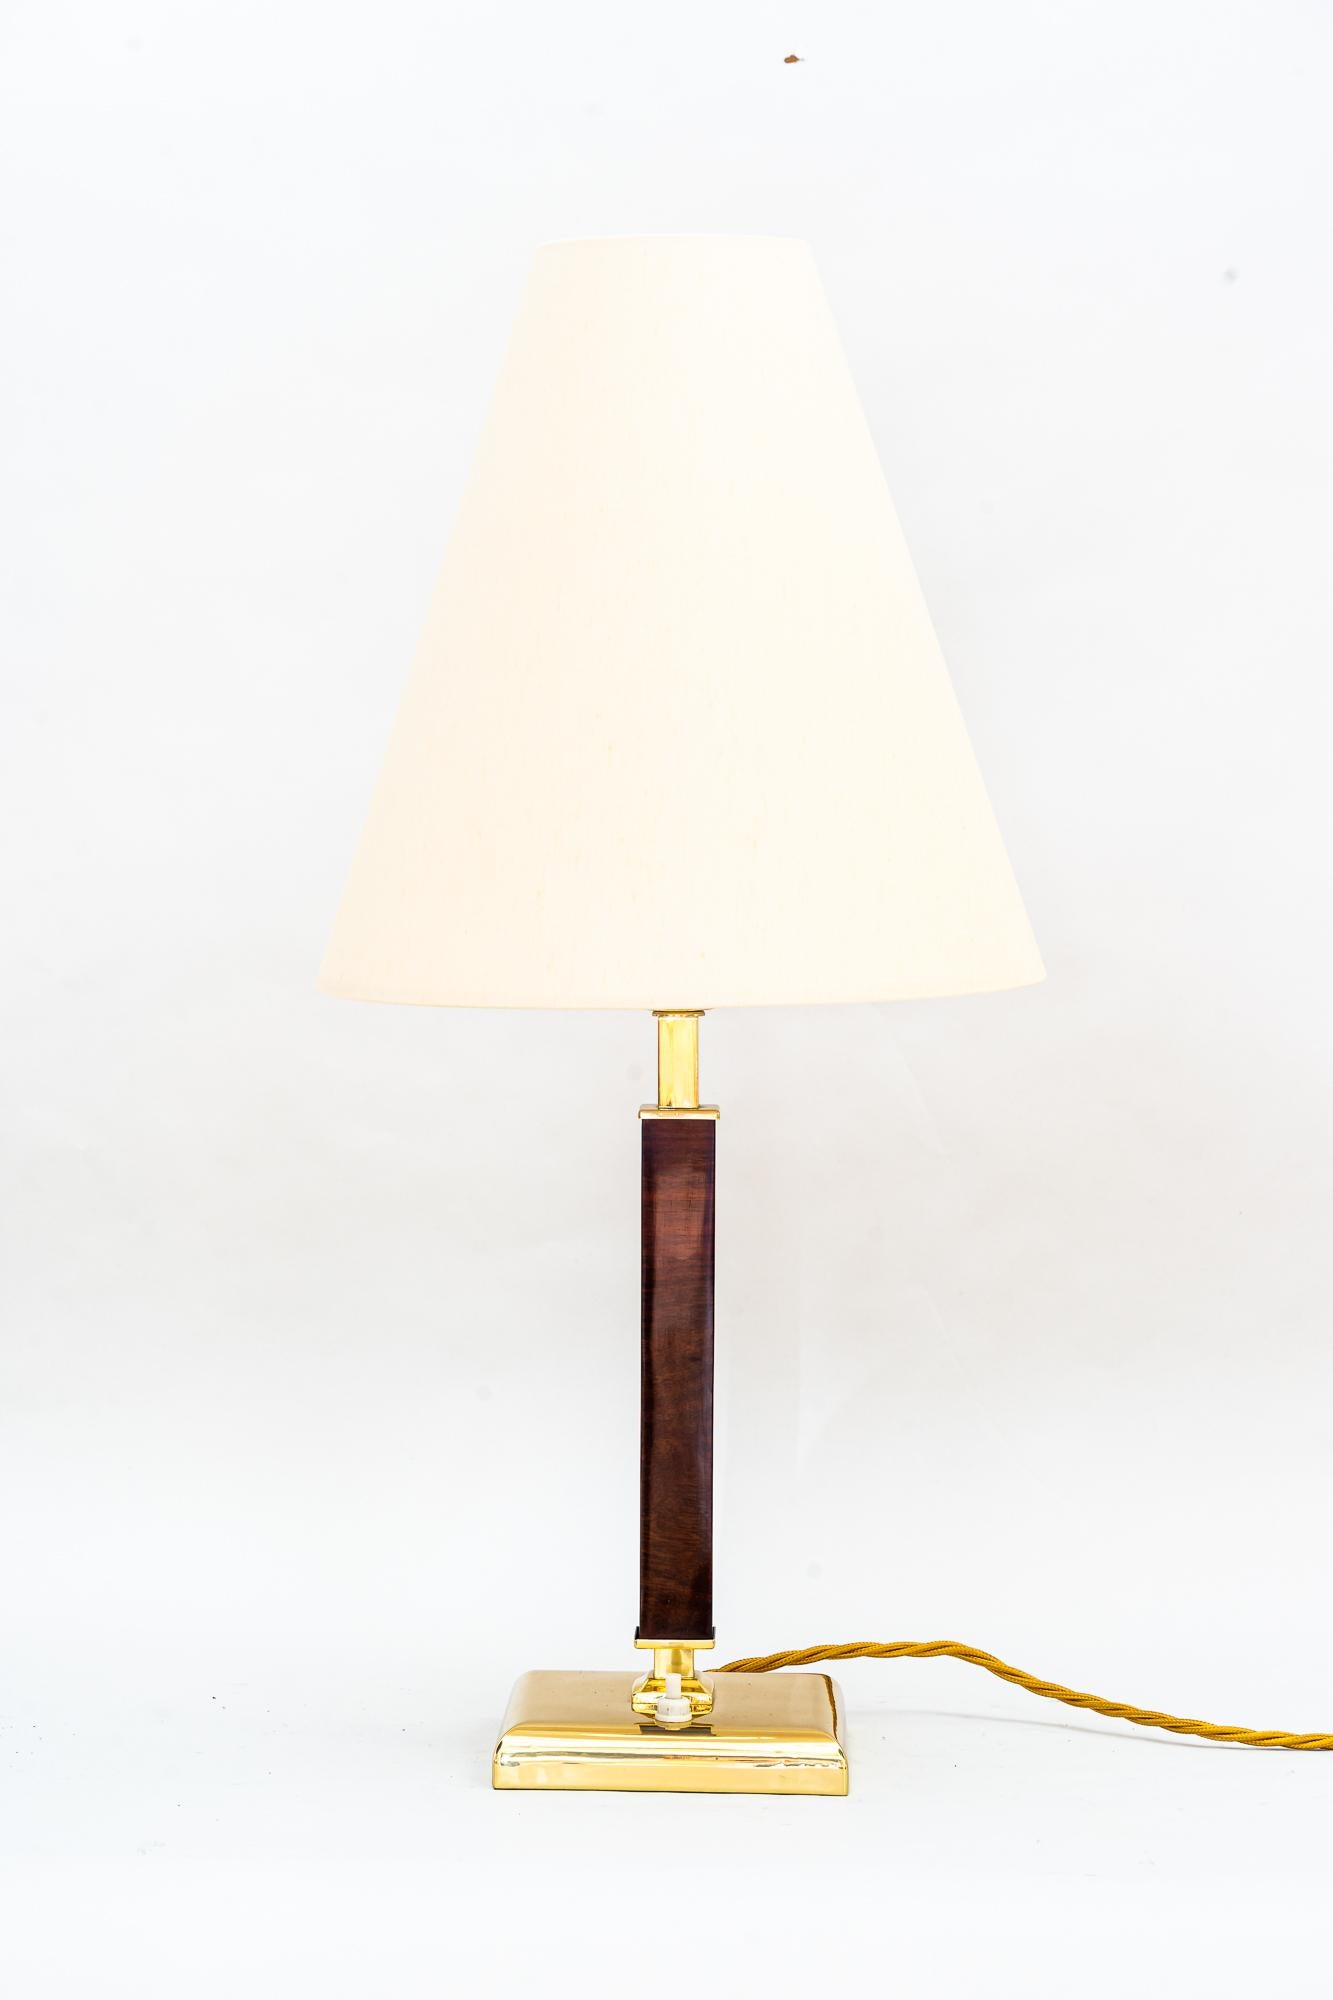 Art Deco Tischlampe mit Stoffschirm wien um 1930
Poliert und emailliert 
Der Schirm wird ersetzt ( neu )